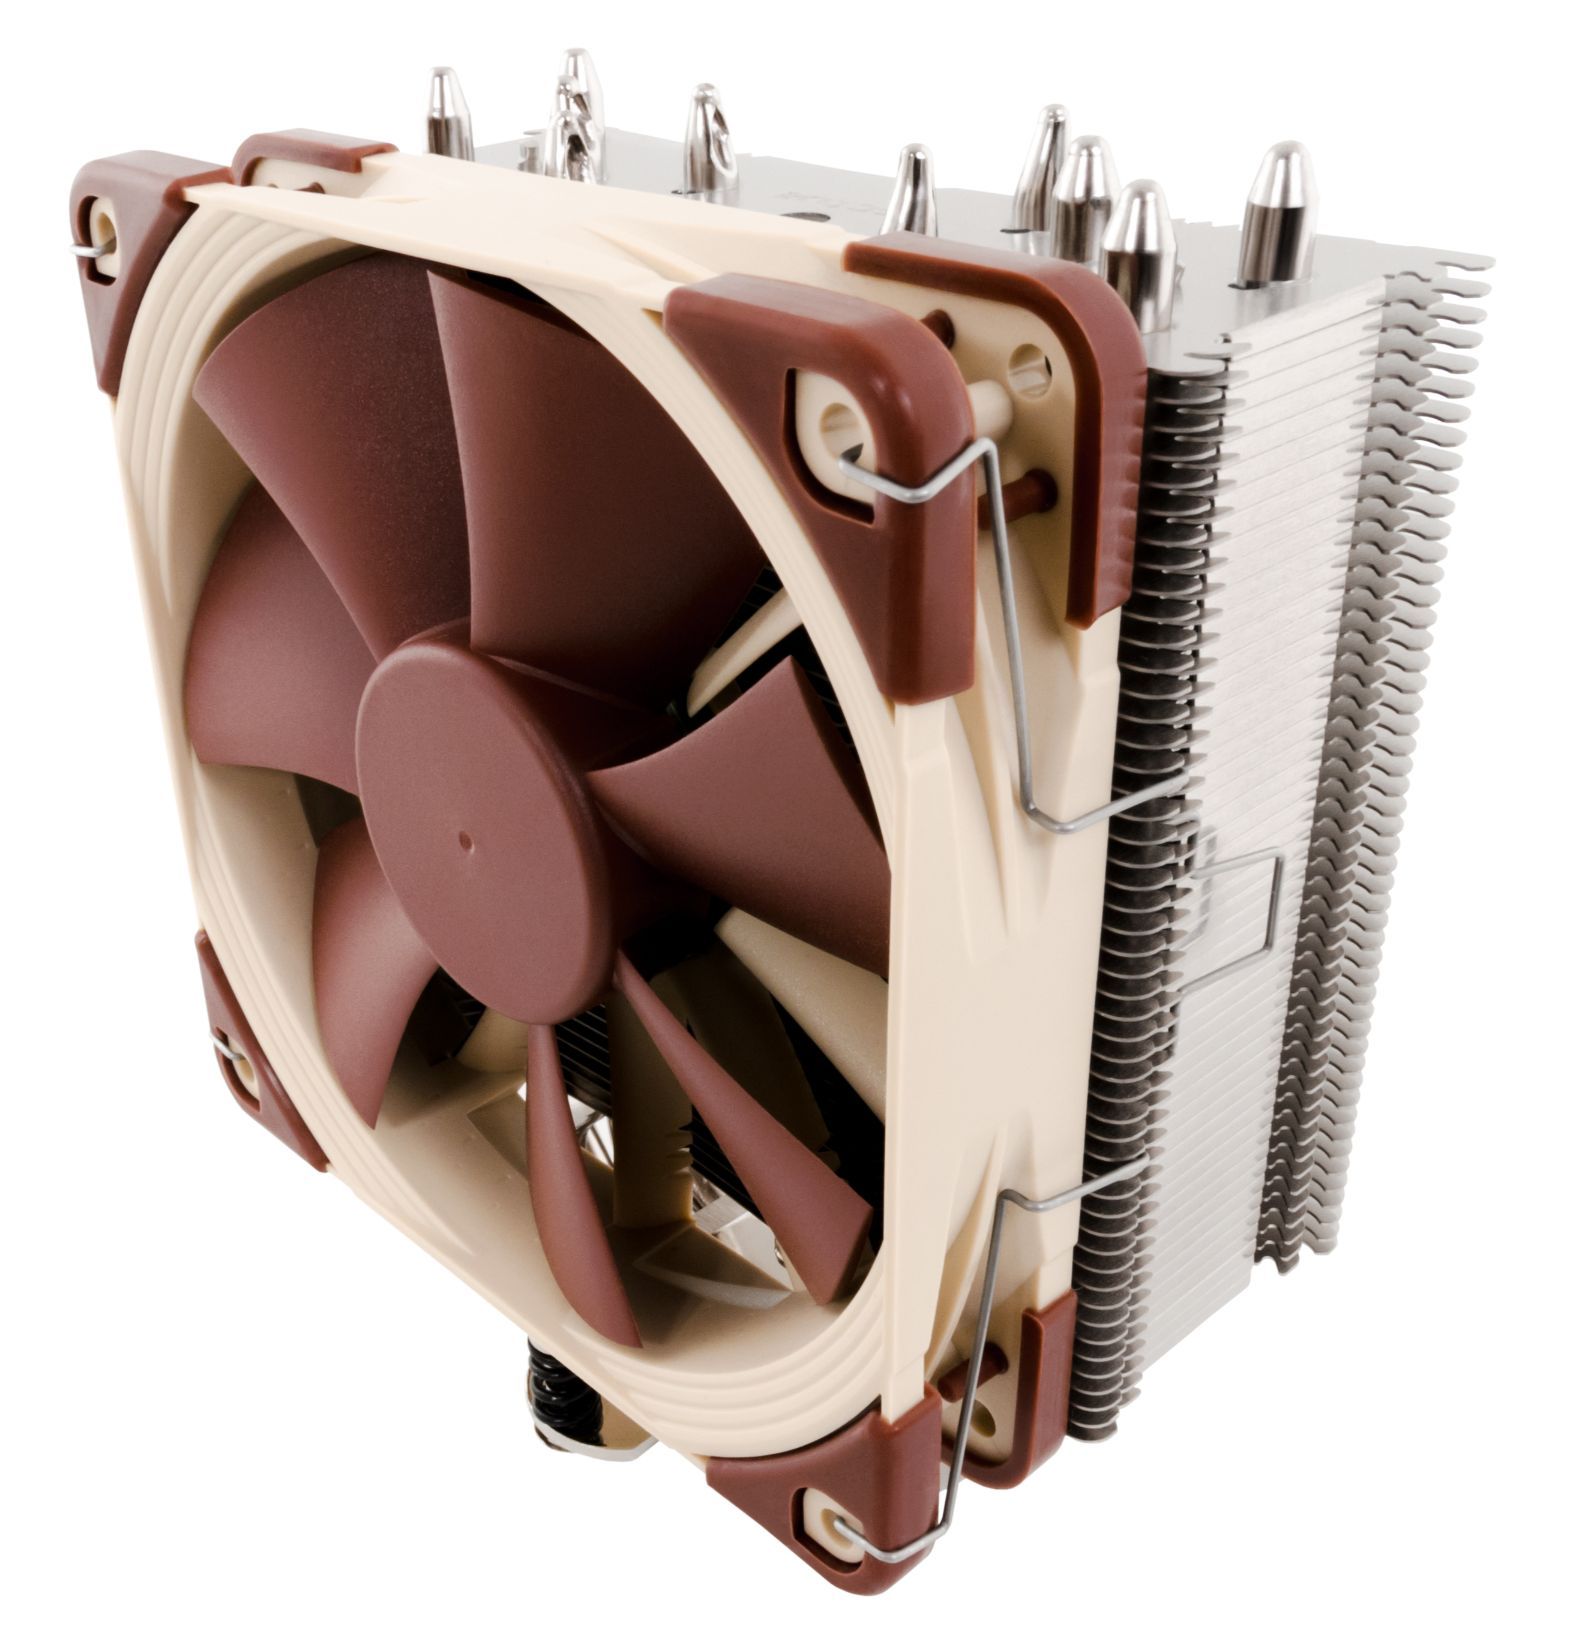 Noctua NH-U12S CPU-Kühler für Intel und AMD Prozessoren, 120mm Lüfter